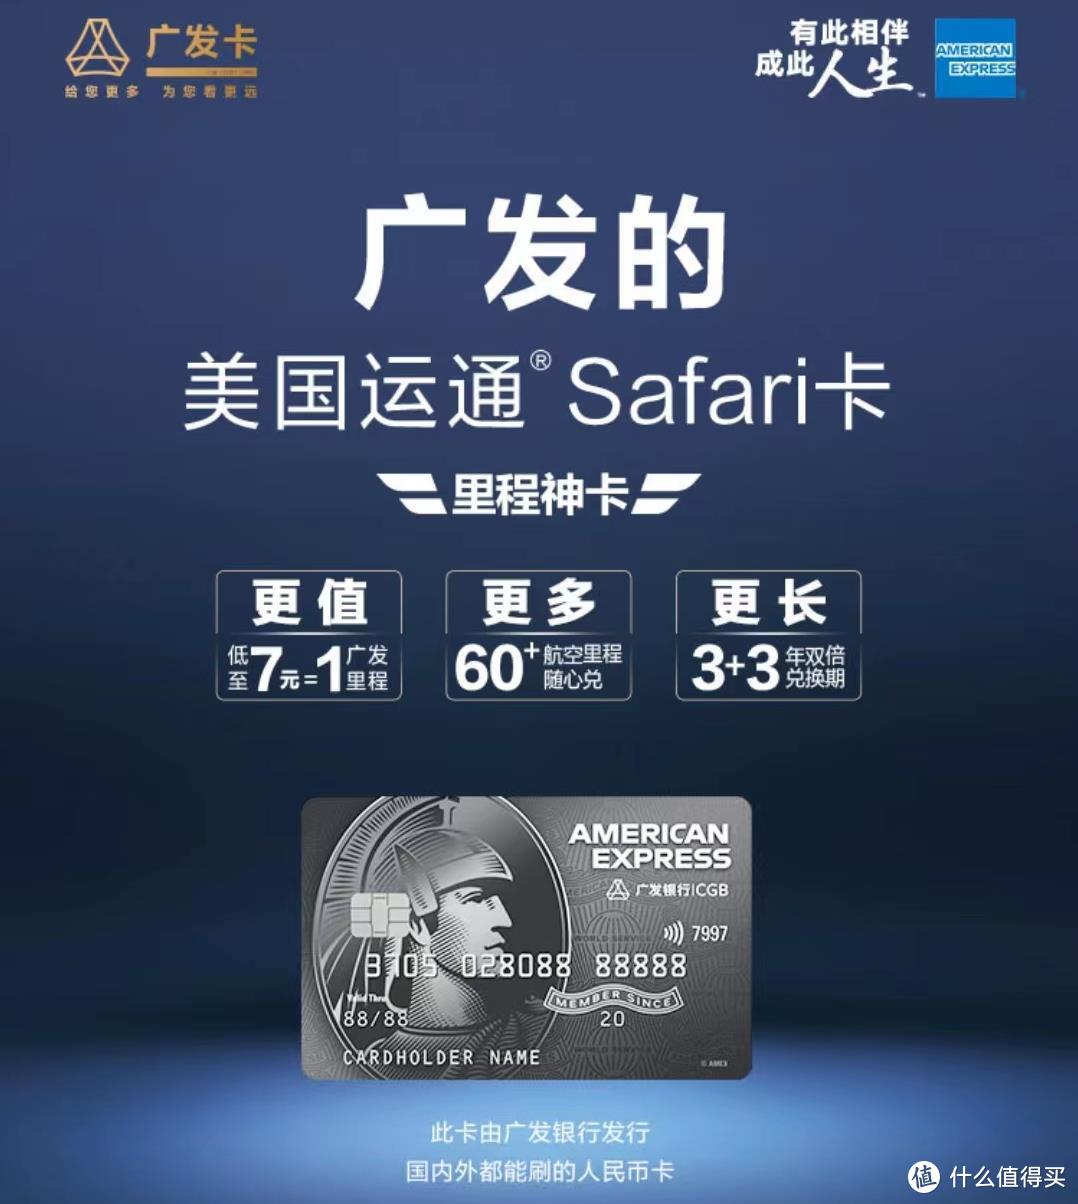 又一张Safari信用卡，即将上线！